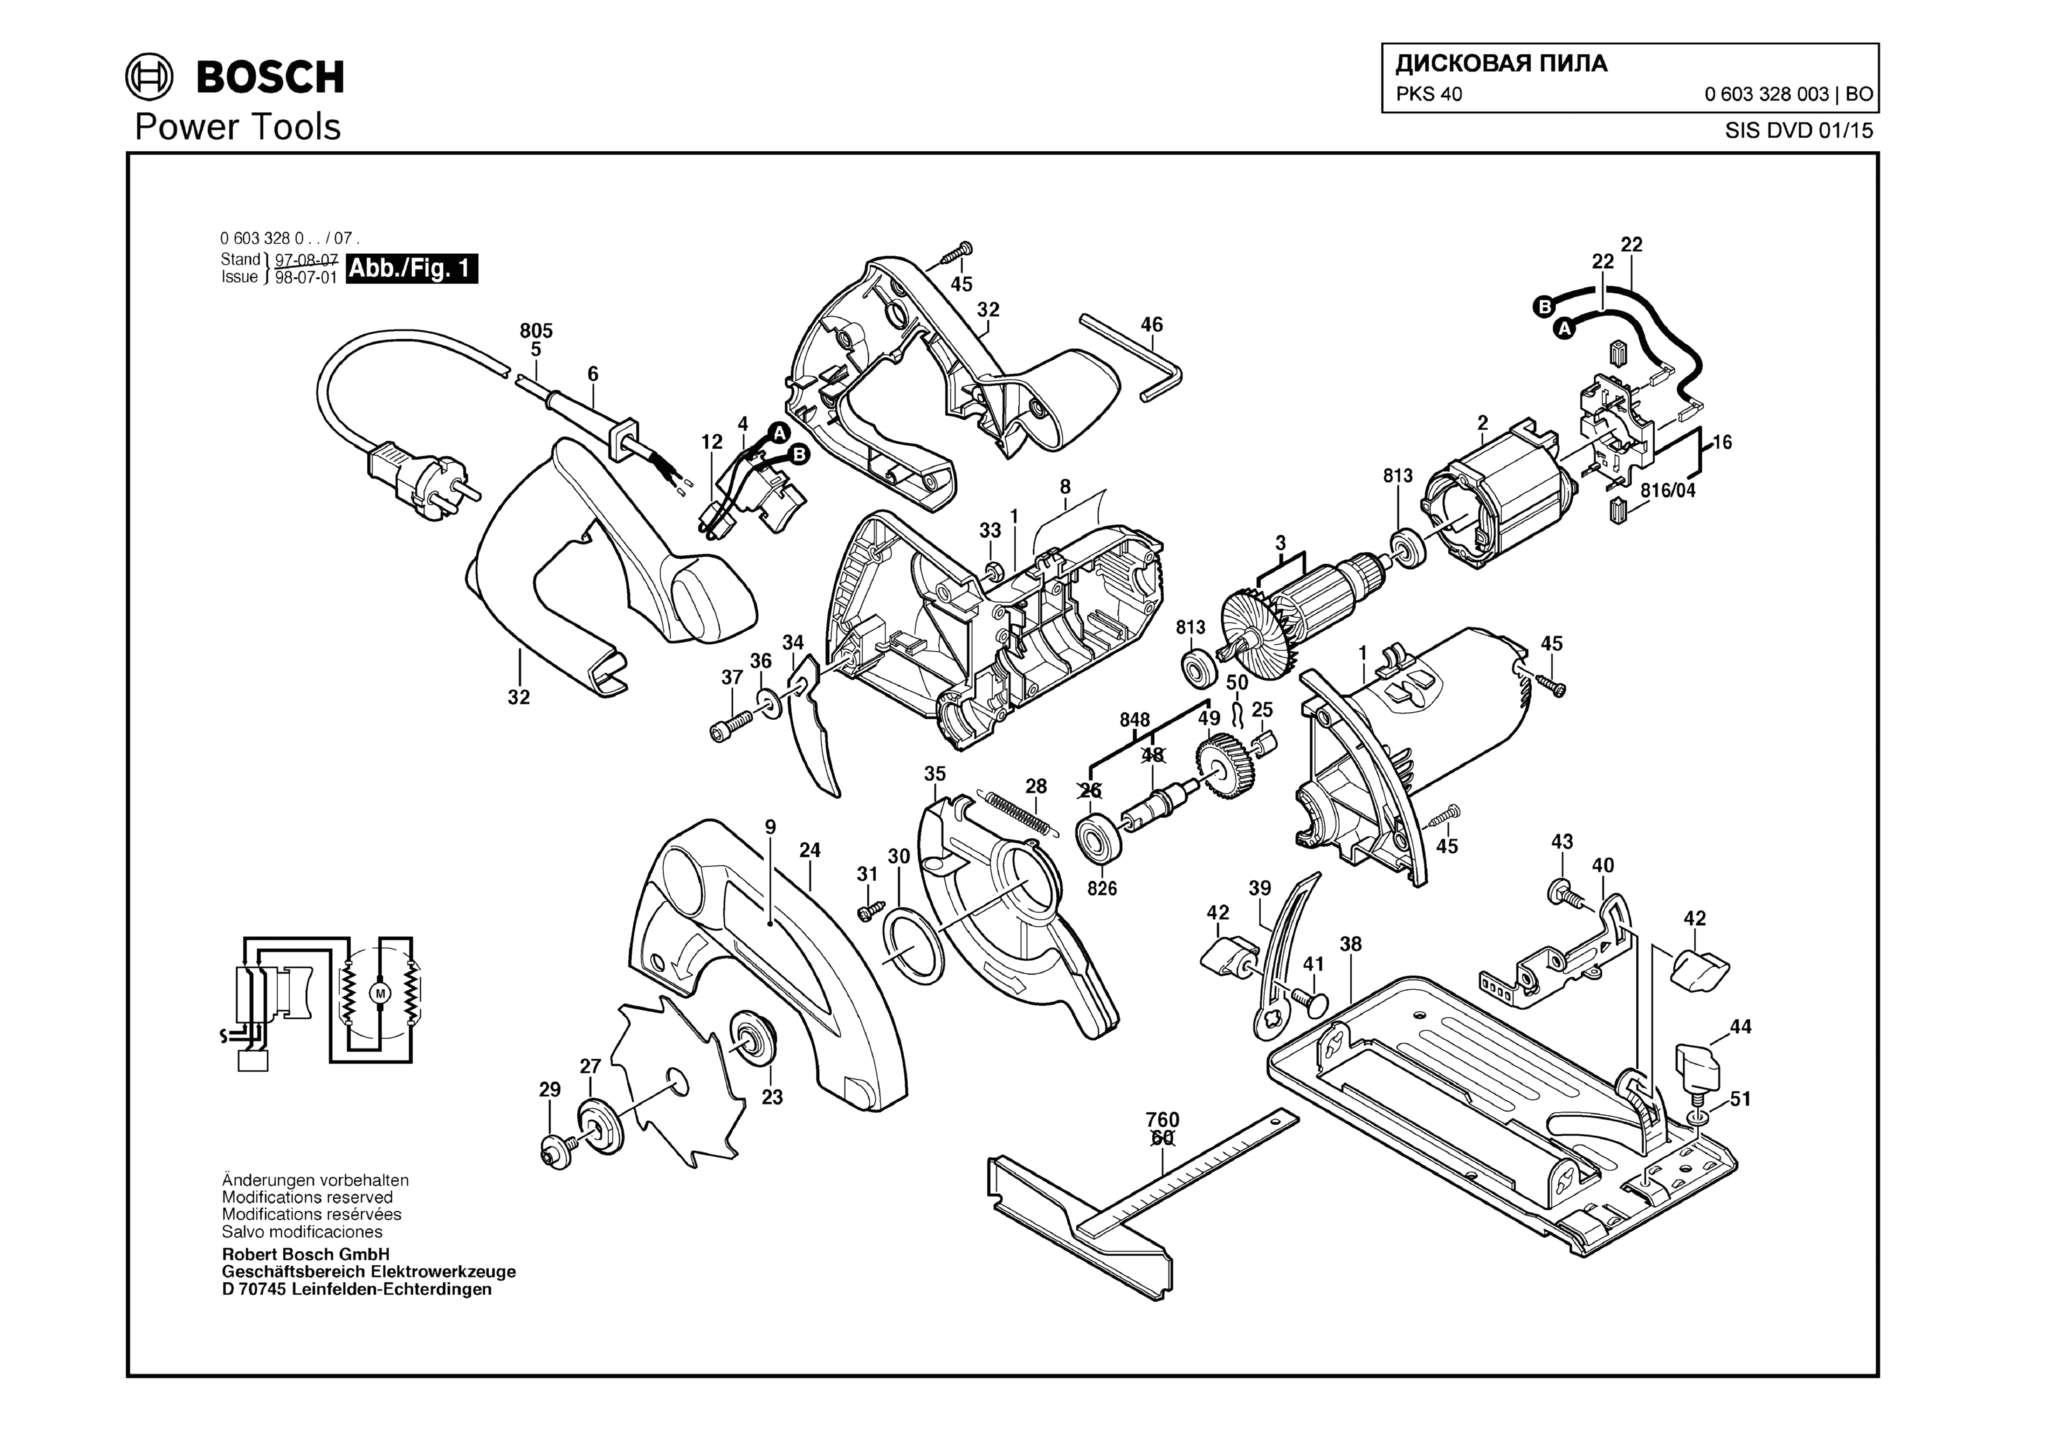 Запчасти, схема и деталировка Bosch PKS 40 (ТИП 0603328003)